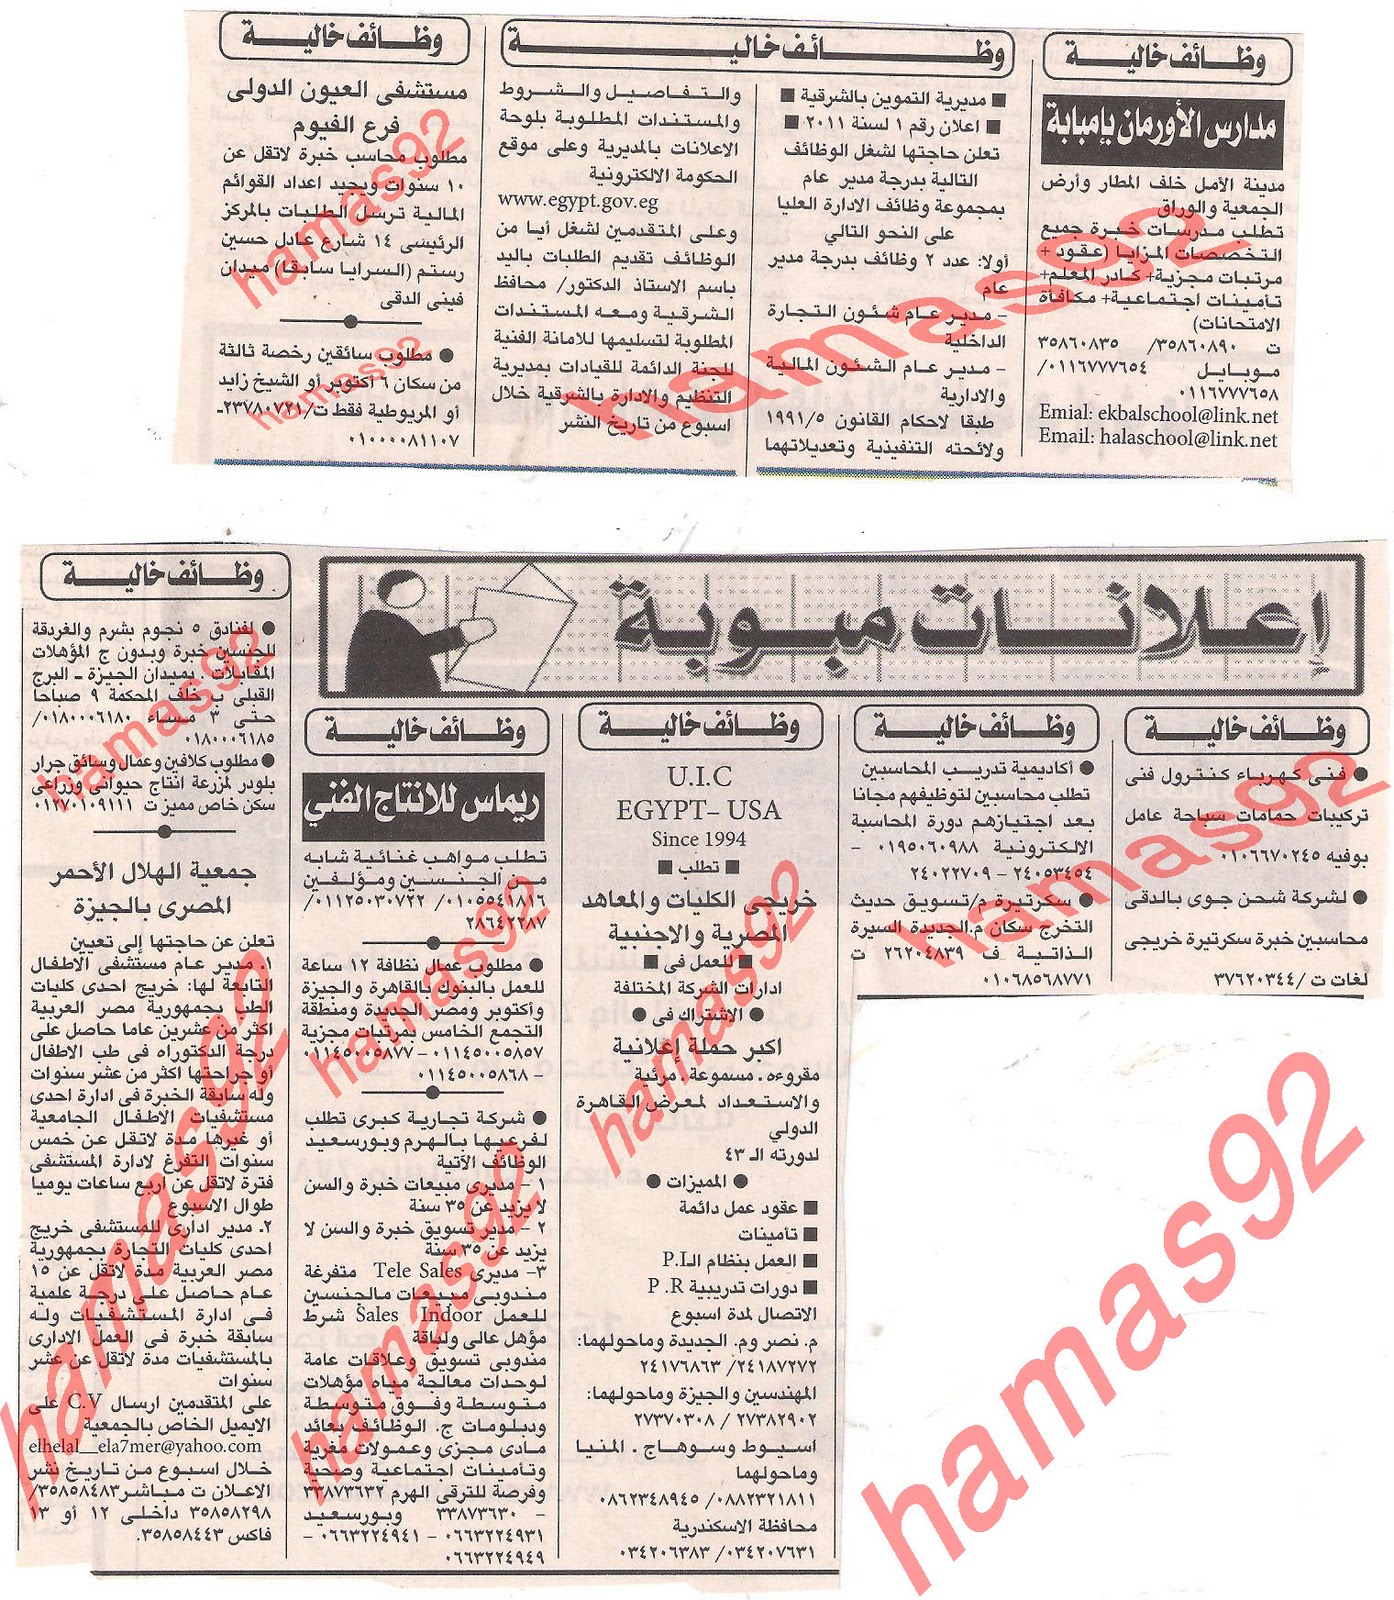 وظائف مصر  وظائف جريدة الاهرام الثلاثاء 15 نوفمبر 2011 Picture+002